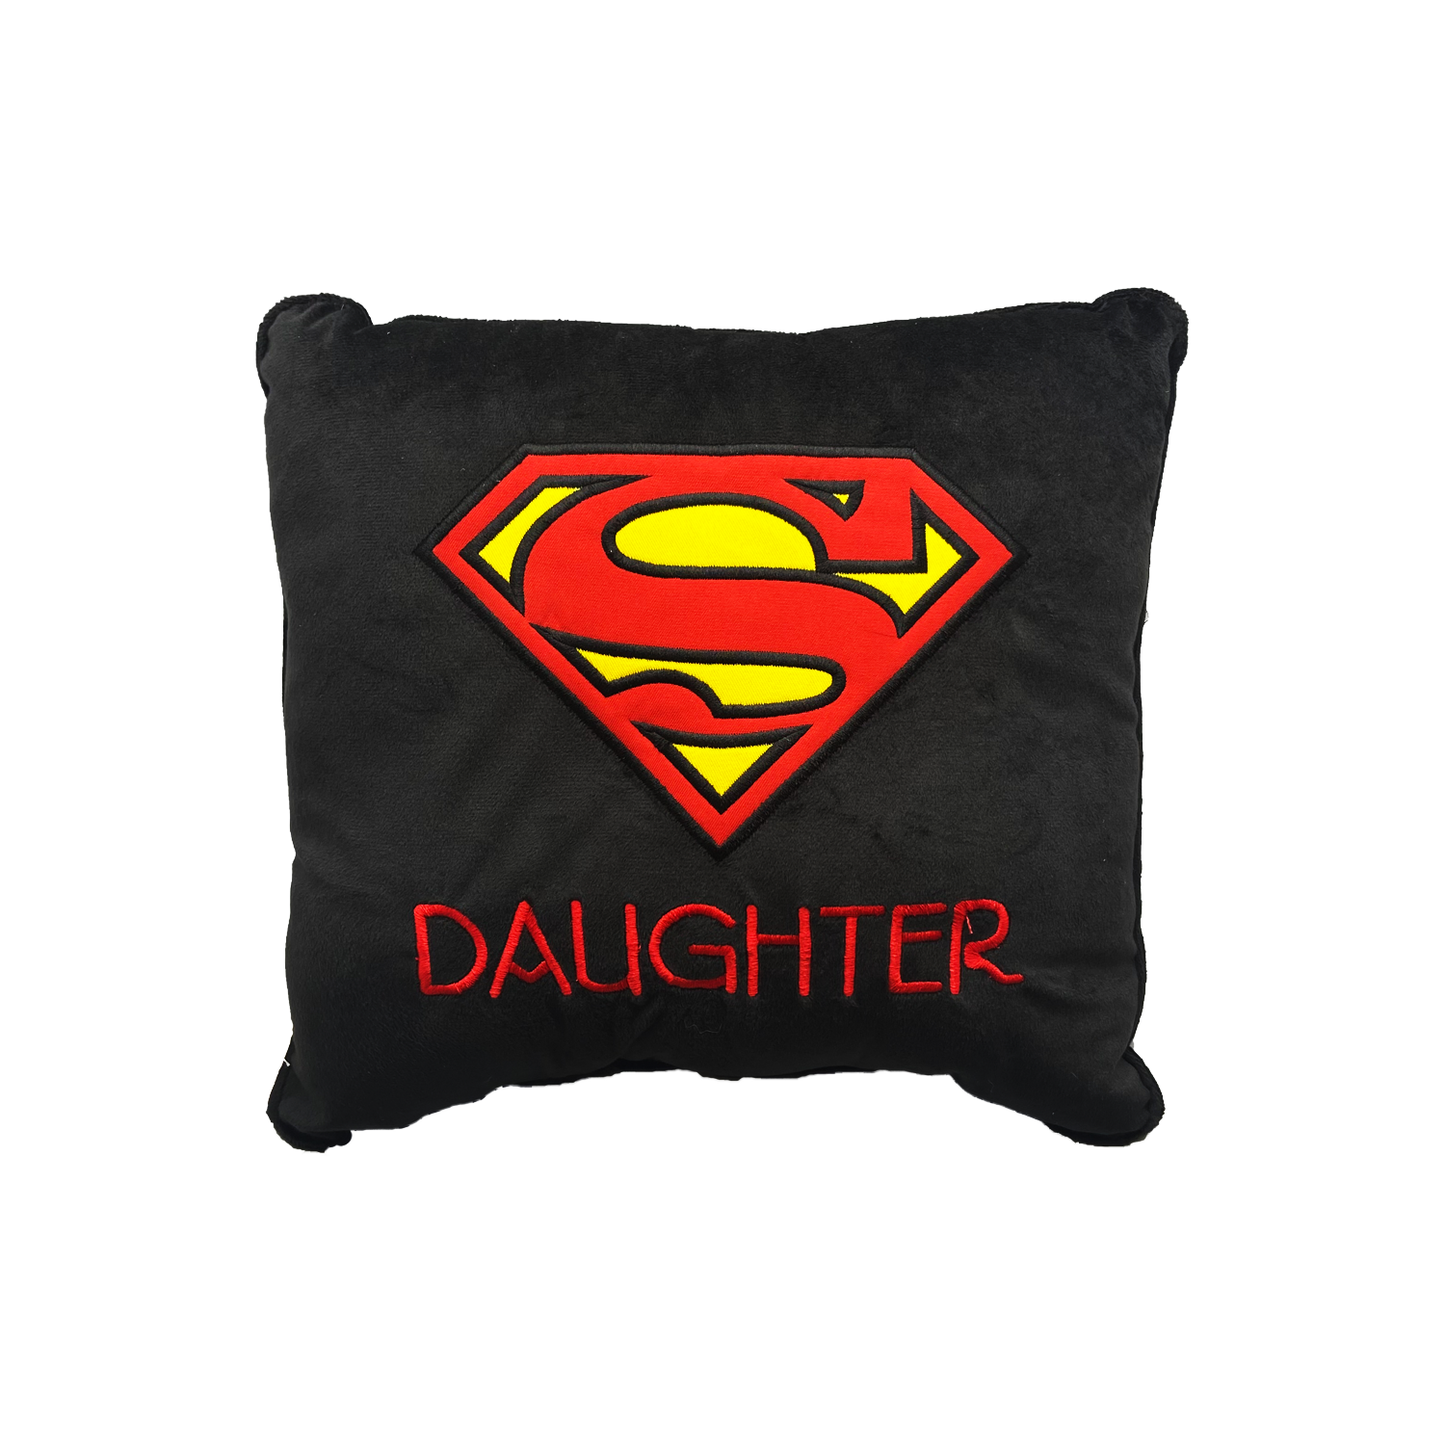 Super daughter